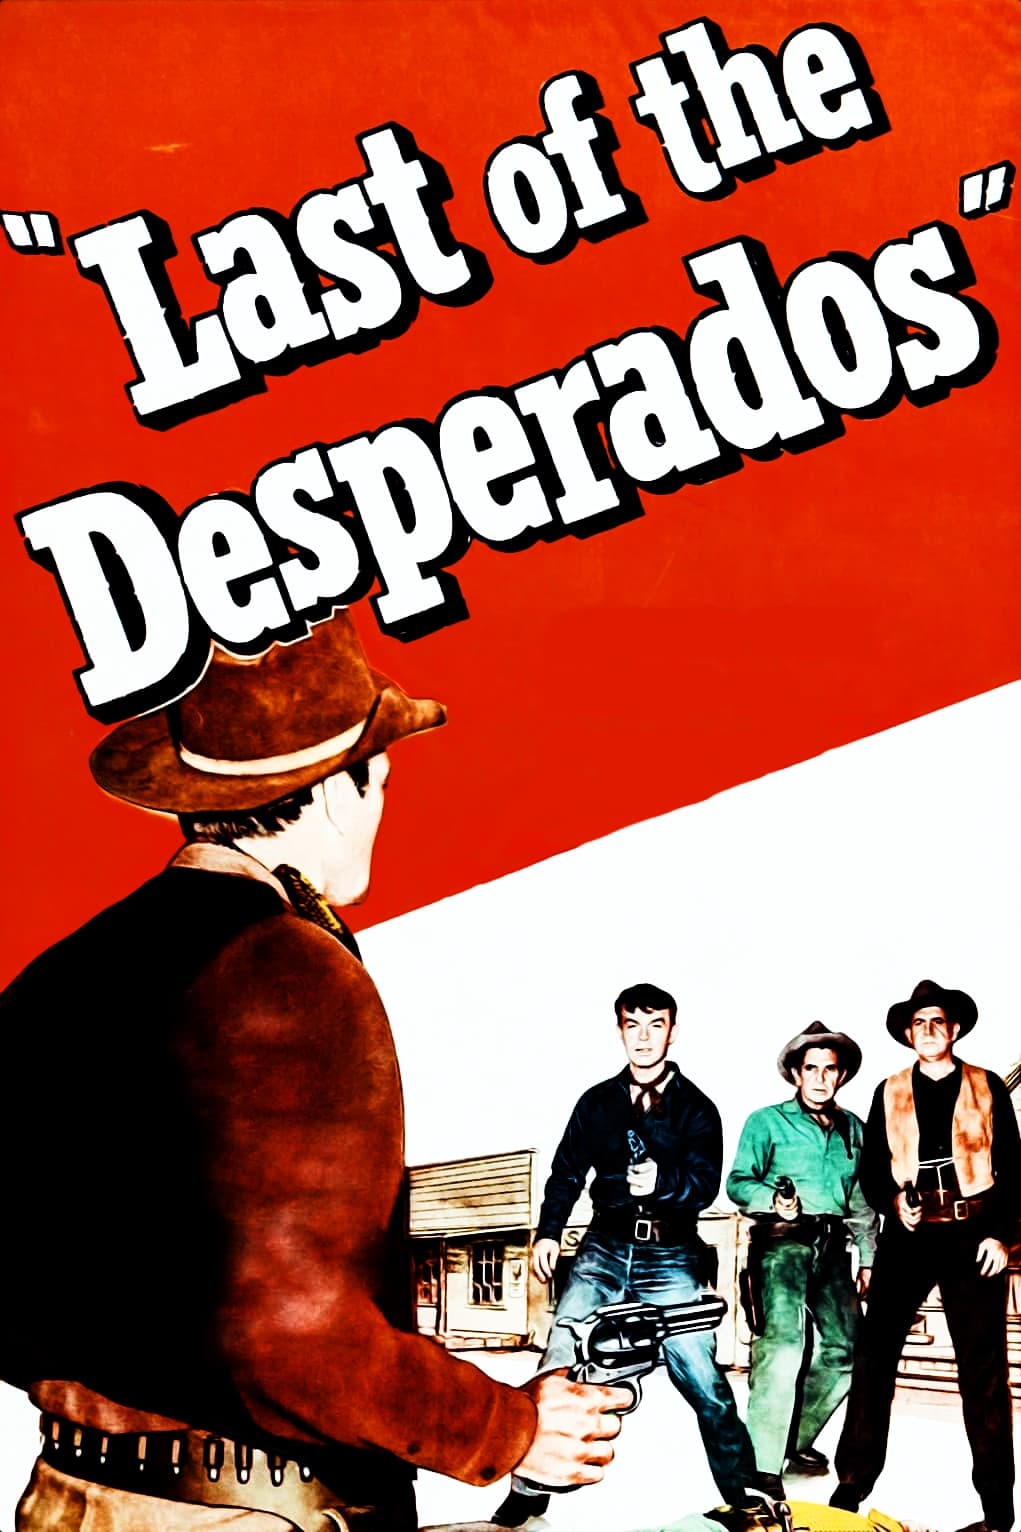 Last of the Desperados